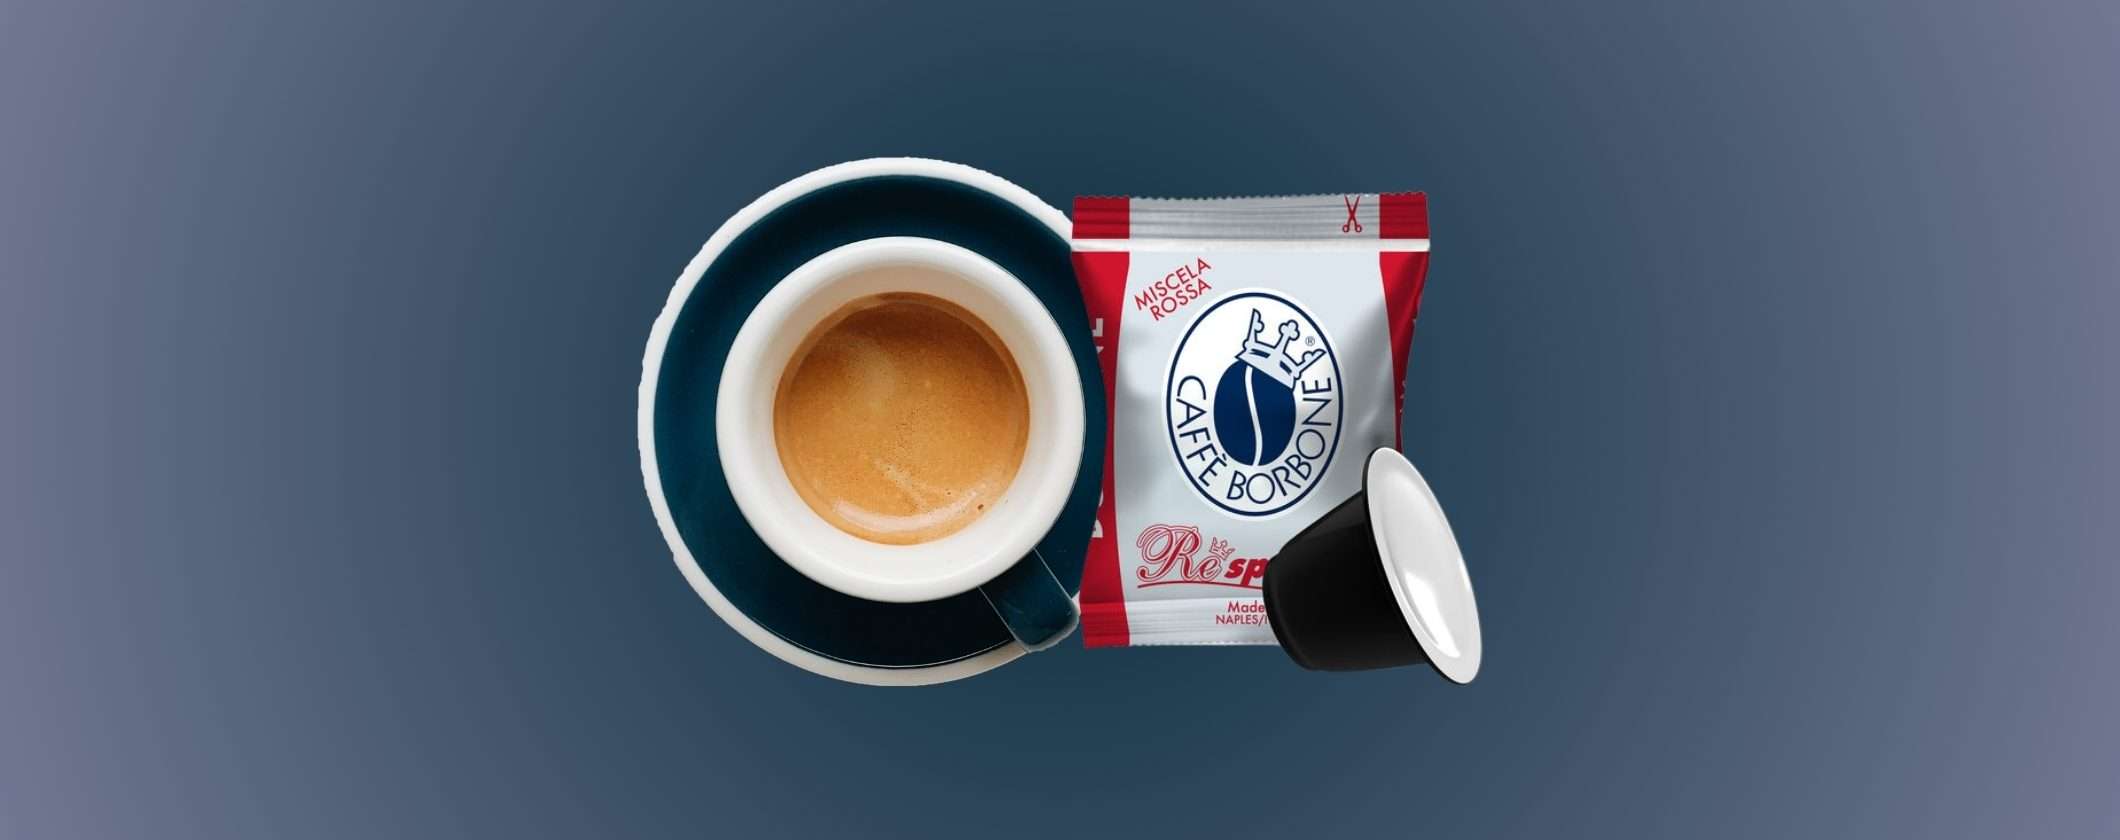 Capsule Caffè Borbone Nespresso in REGALO su eBay